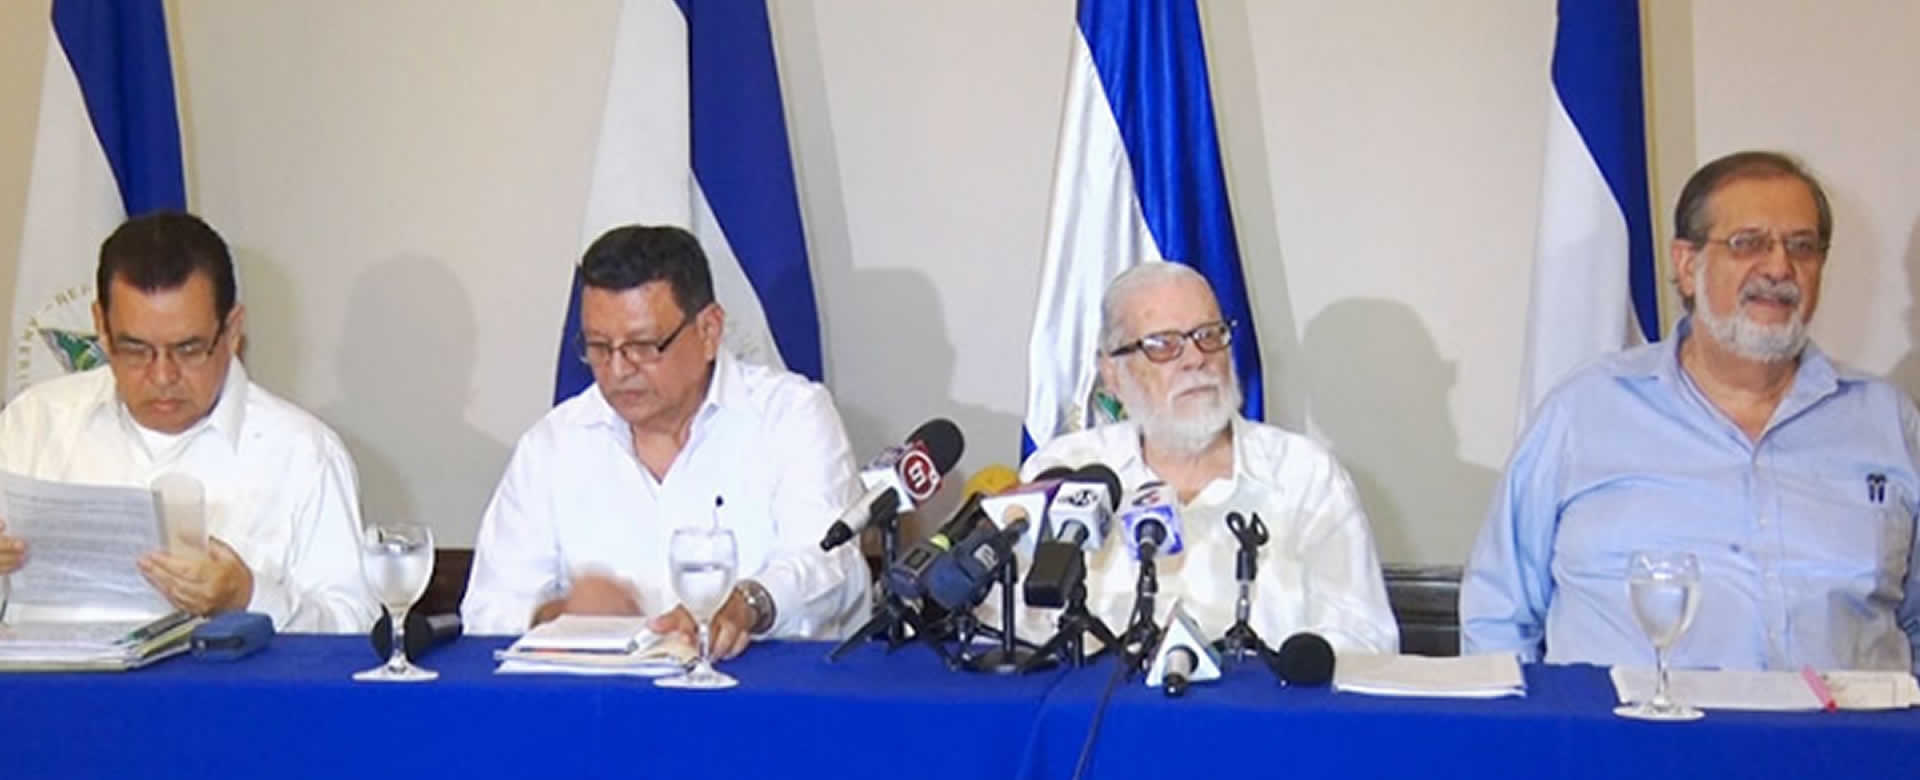 Comisión de la Verdad, Justicia y Paz brinda nuevo informe sobre los actos terroristas en Nicaragua